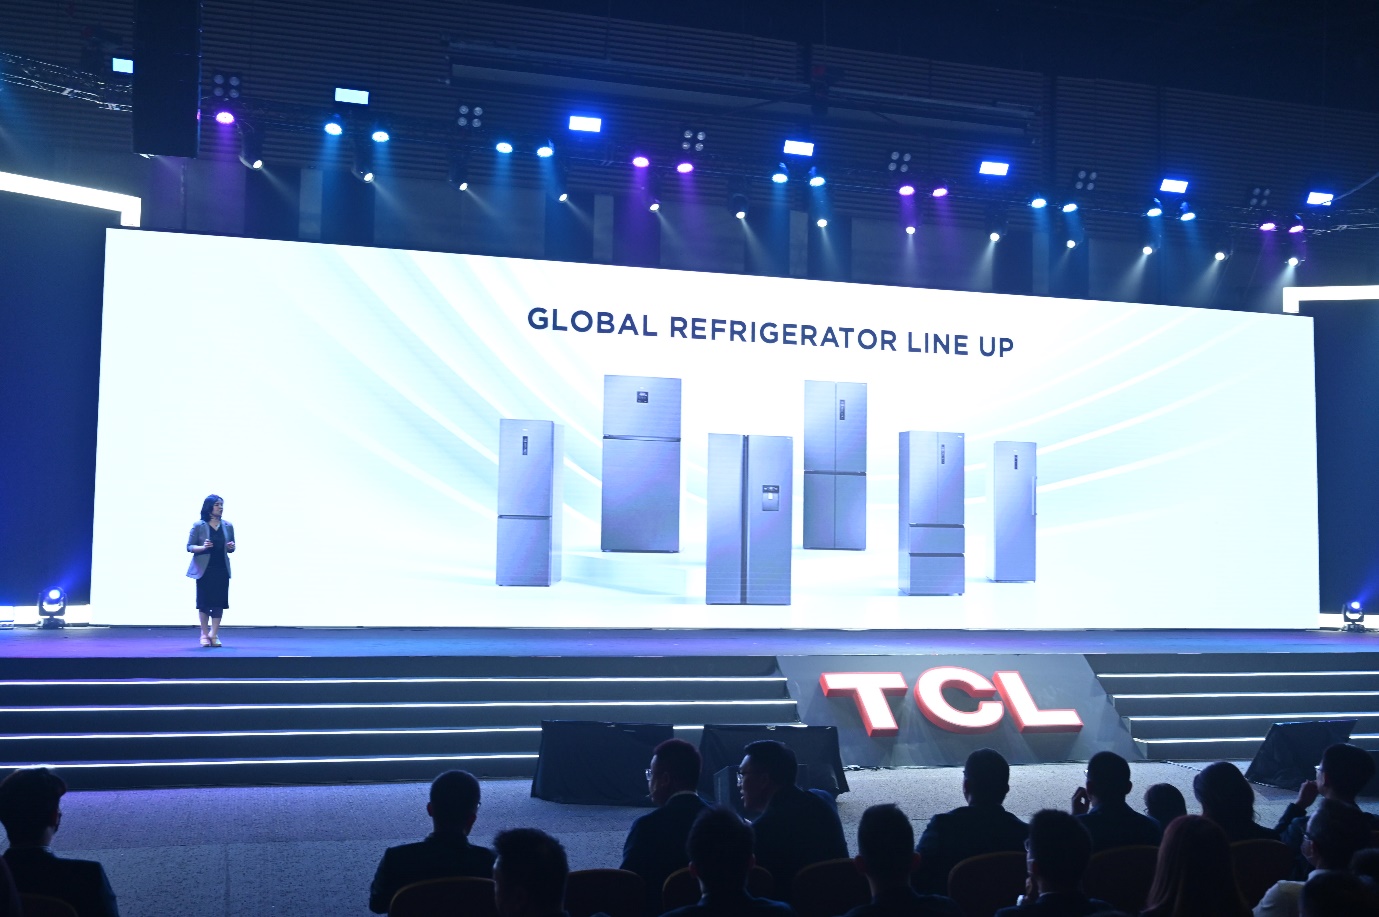 TCL ra mắt thế hệ Mini LED, QLED mới kết hợp loa thanh và thiết bị nhà thông minh - Ảnh 4.